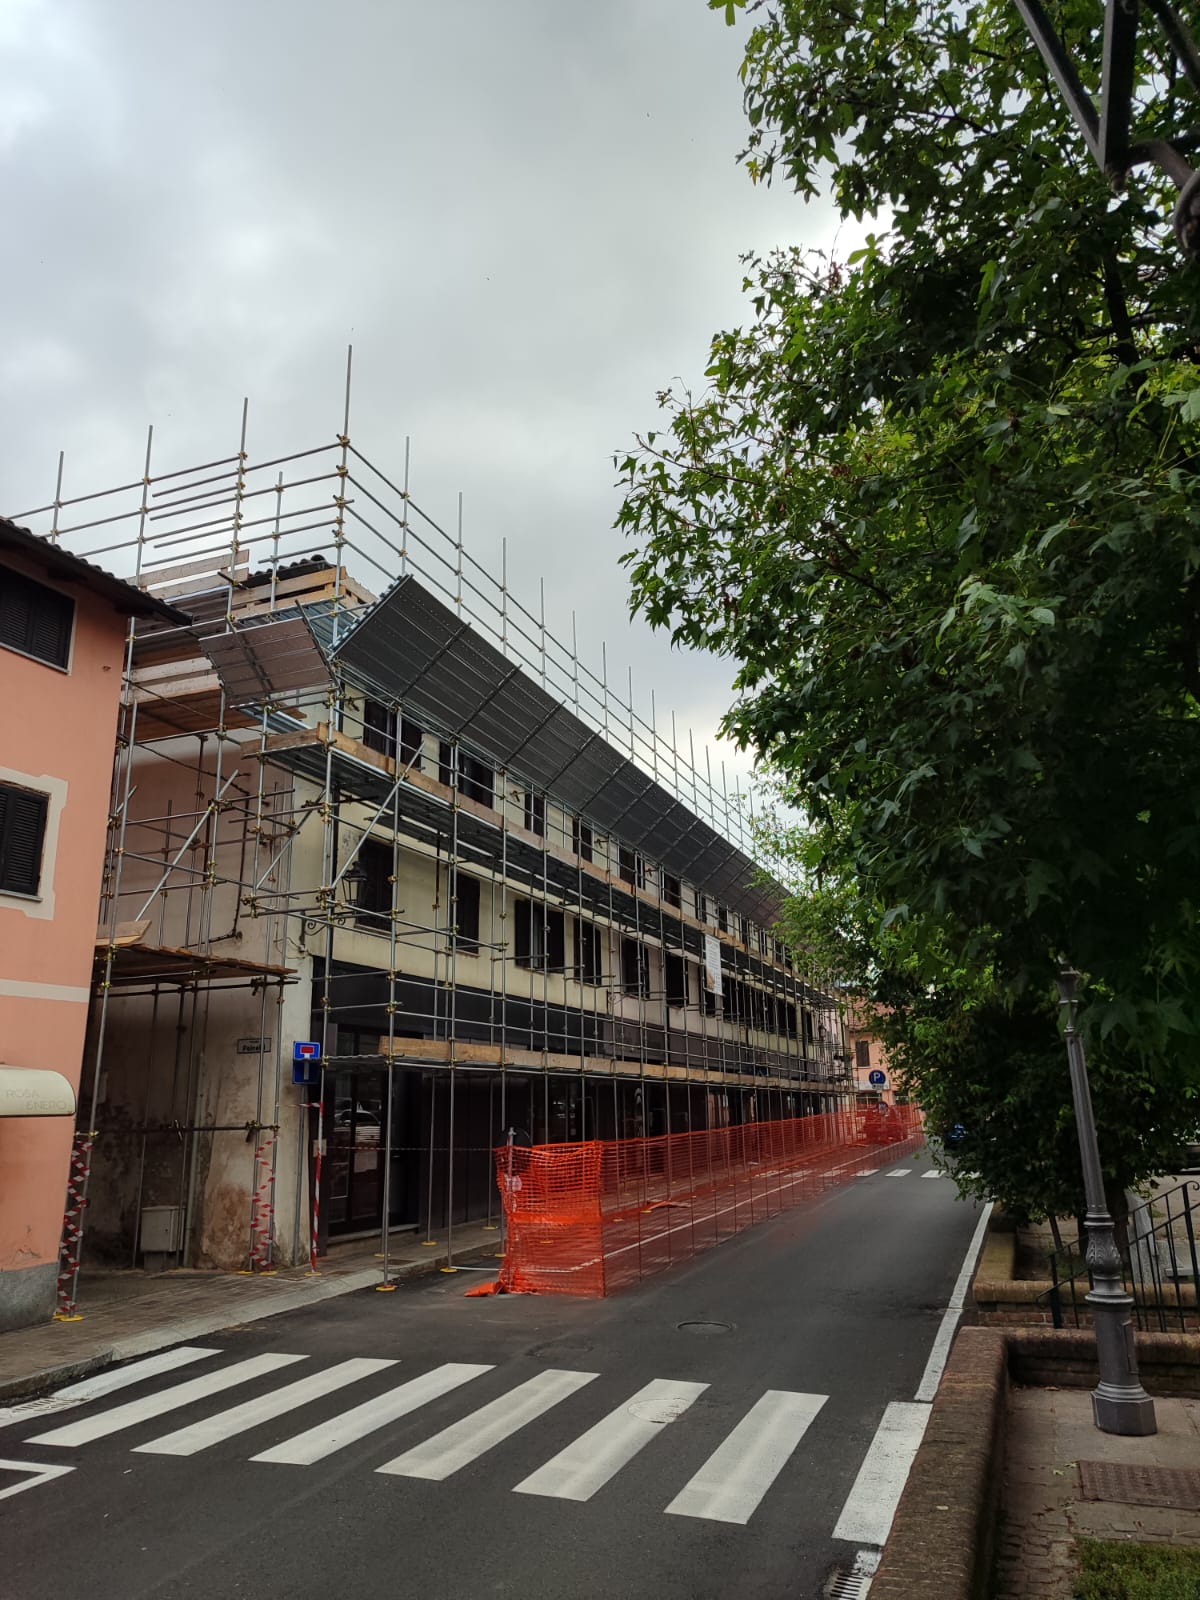 CAMBIANO – Via al risanamento dell’edificio popolare con i fondi del Pnrr